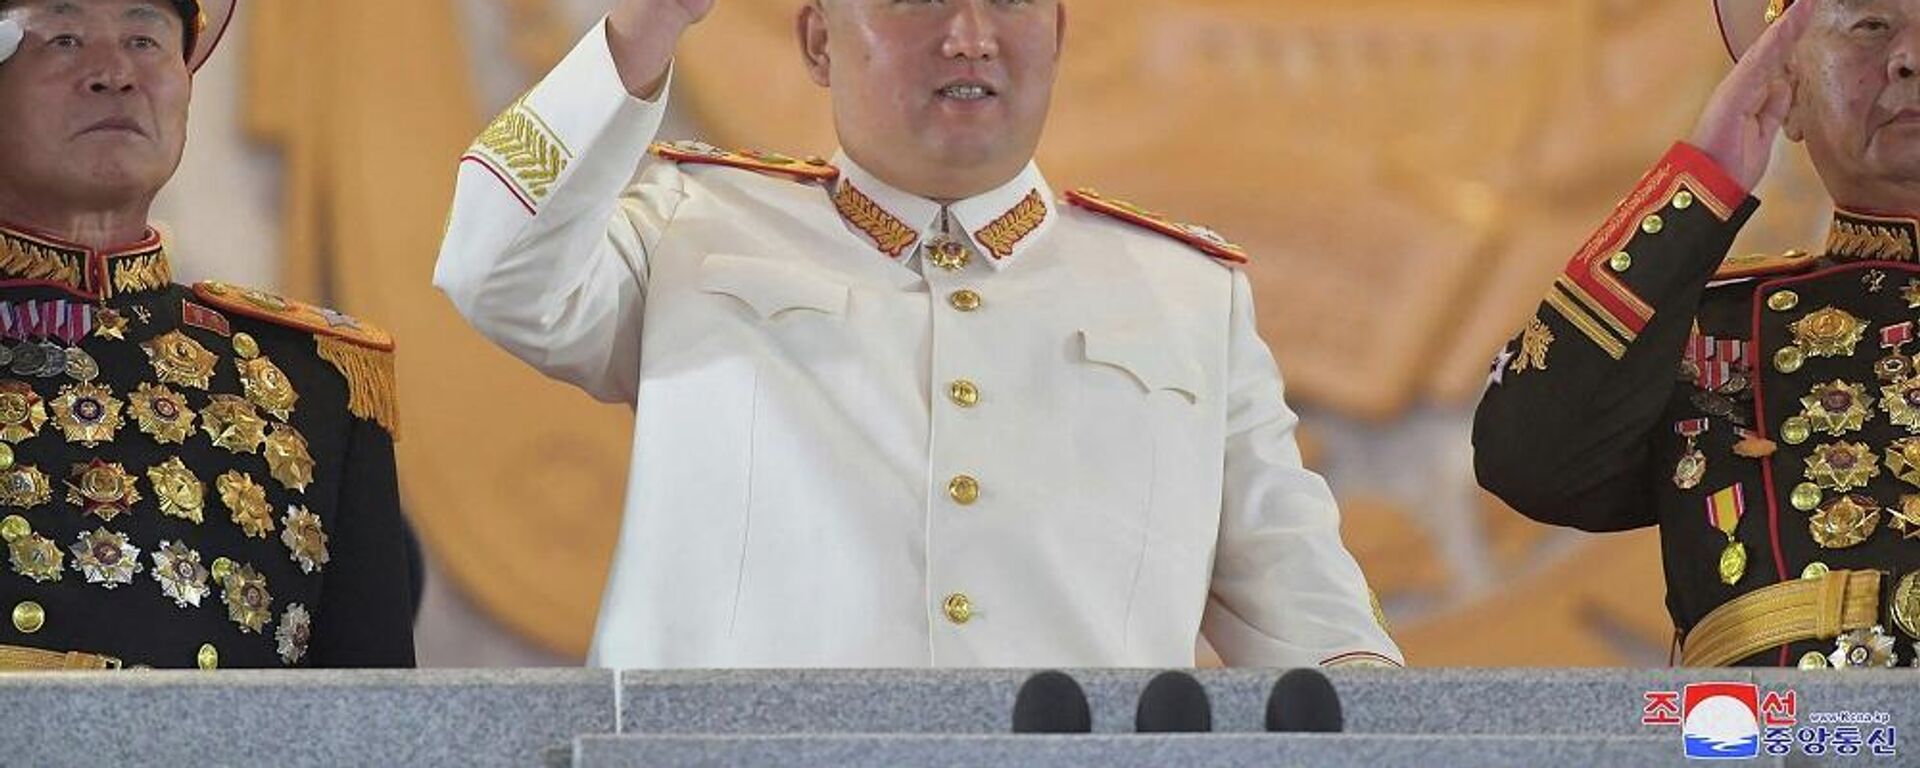 زعيم كوريا الشمالية، كيم جونغ أون، يشارك في عرض عسكري كبير أقيم في ساحة كيم إيل سونغ في بيونغ يانغ، 26 نيسان/ أبريل 2022 - سبوتنيك عربي, 1920, 19.11.2022